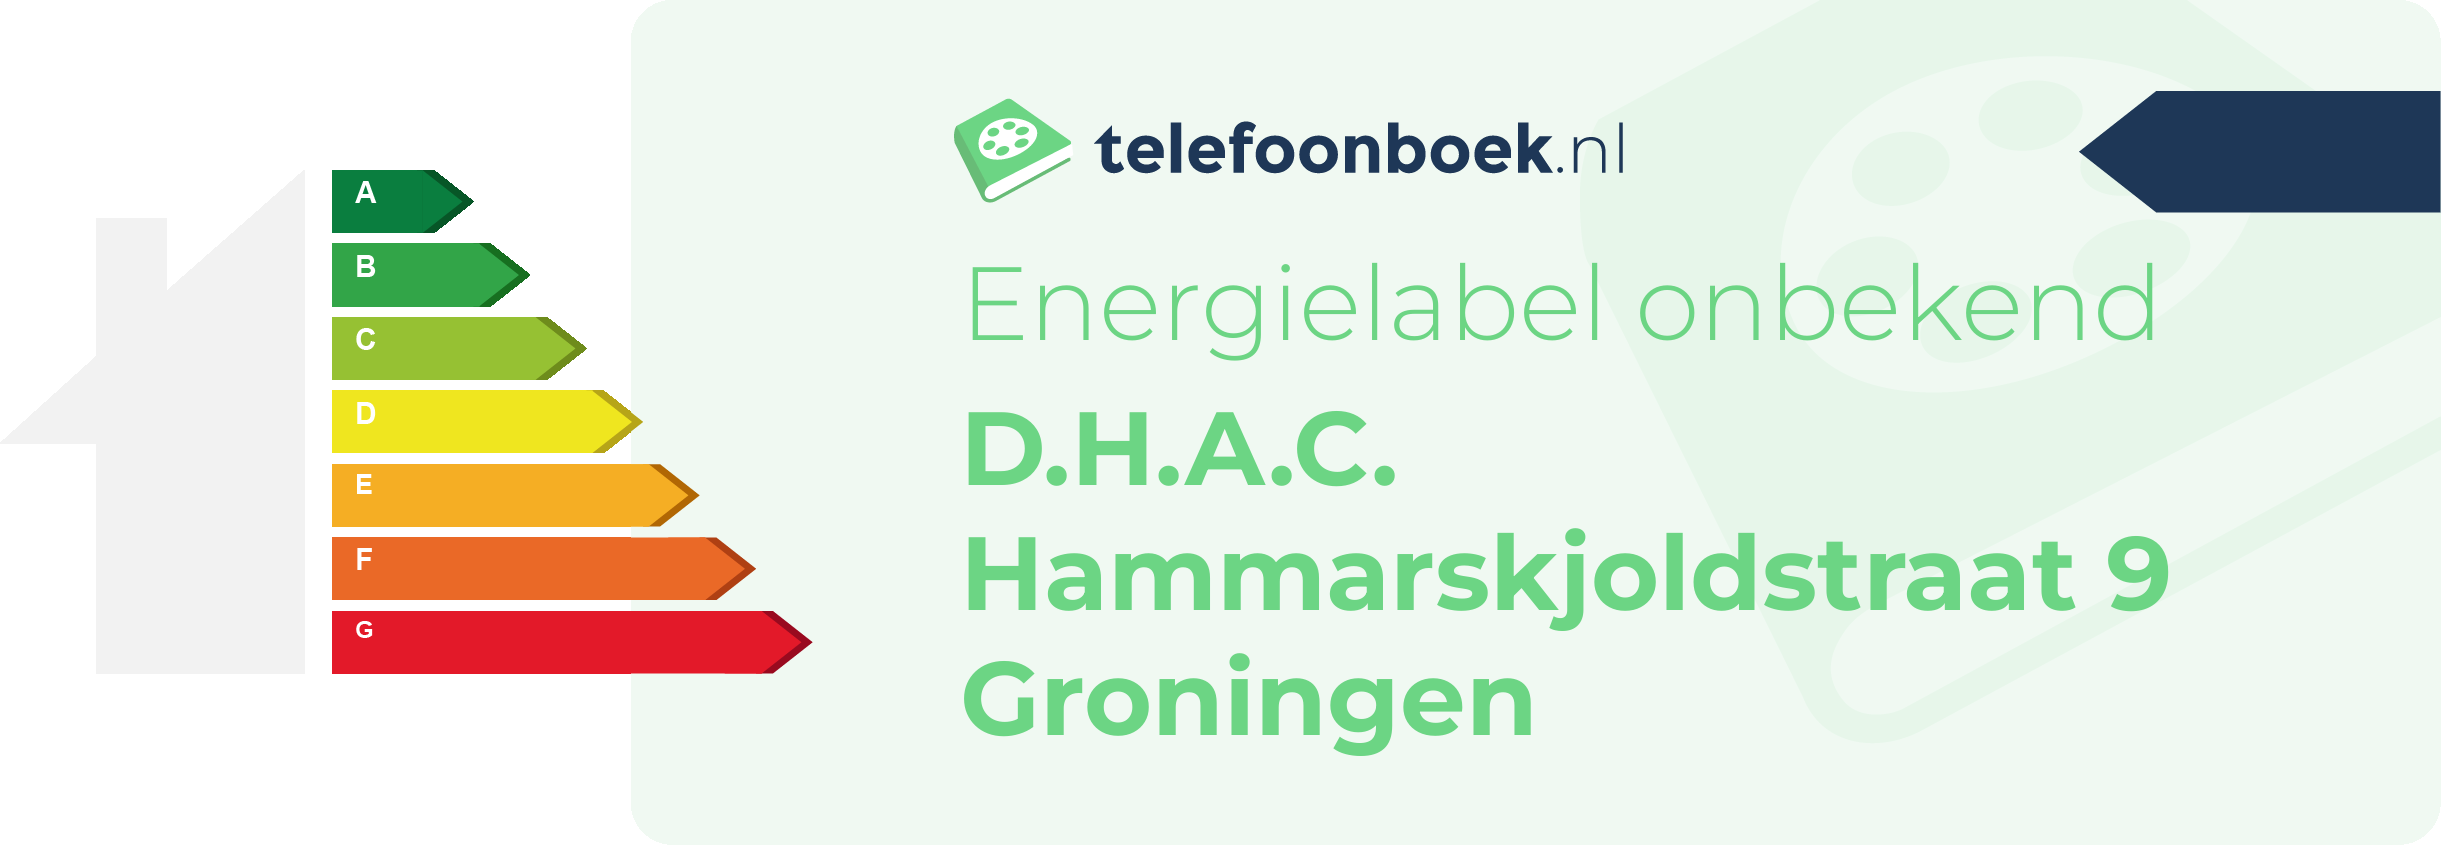 Energielabel D.H.A.C. Hammarskjoldstraat 9 Groningen